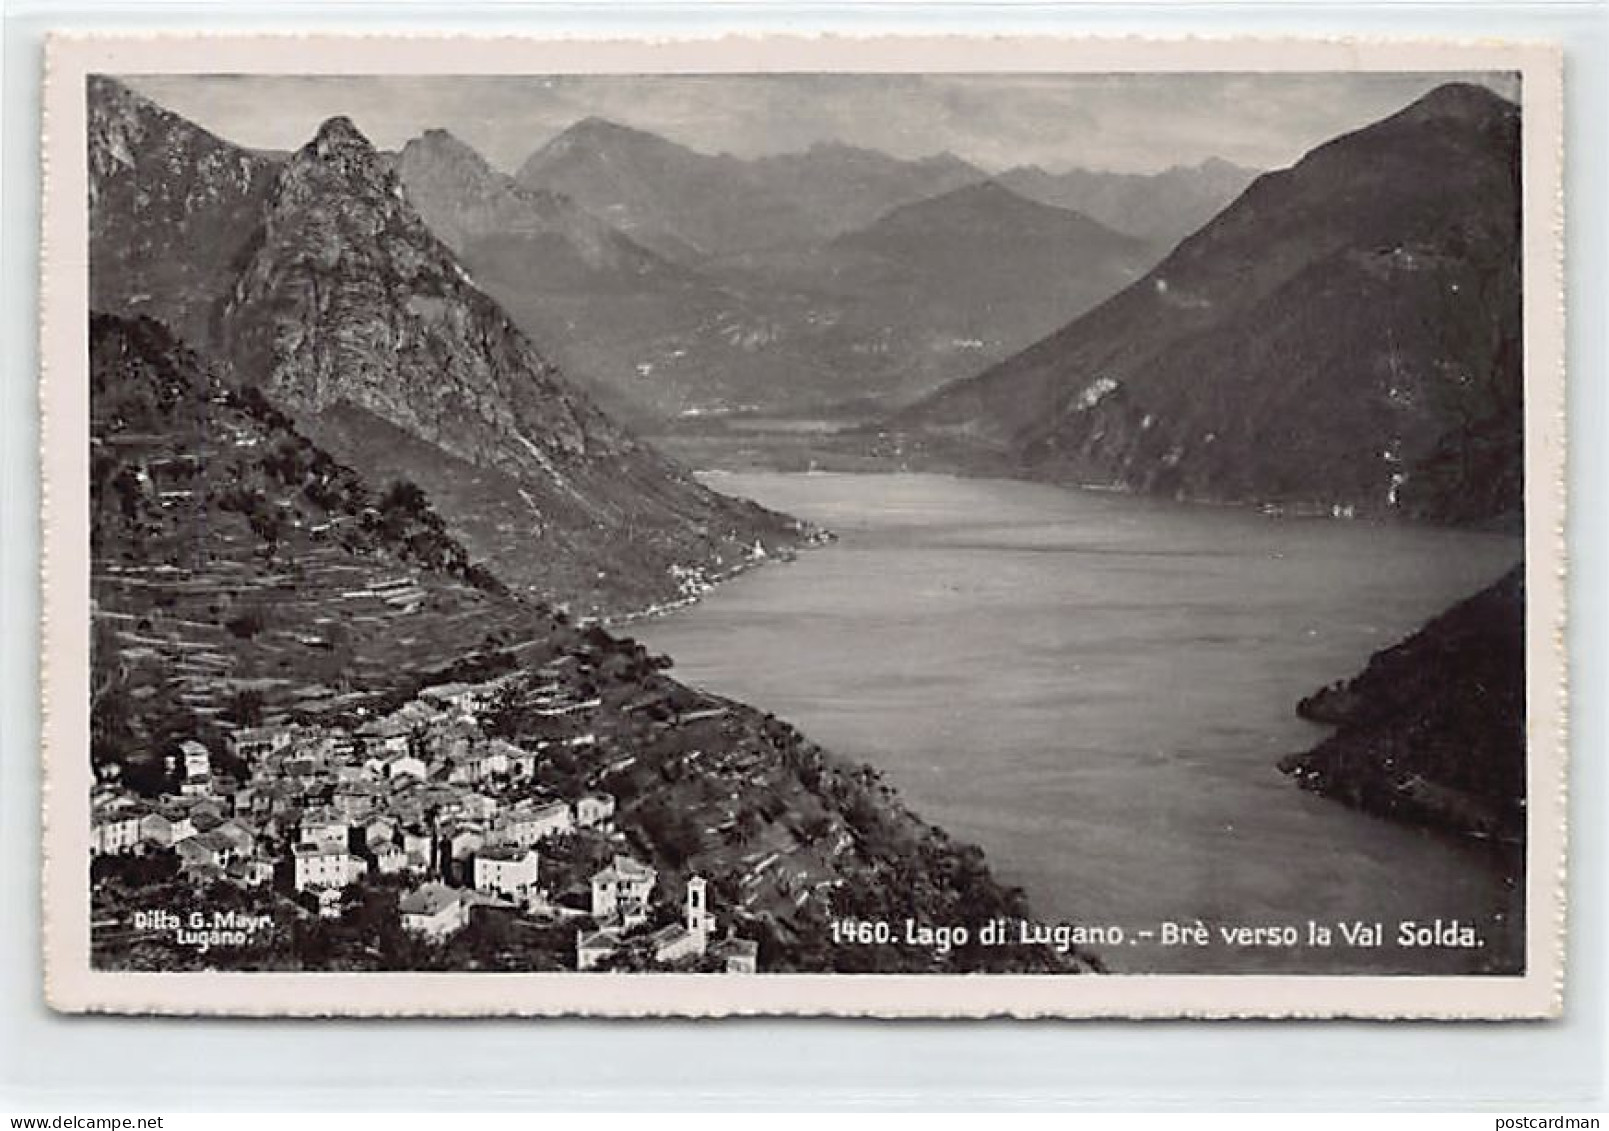 Svizzera - Lac De Lugano (TI) Brè Verso La Val Solda - Ed. Ditta G.Mayr1460 - Lago Di Lugano